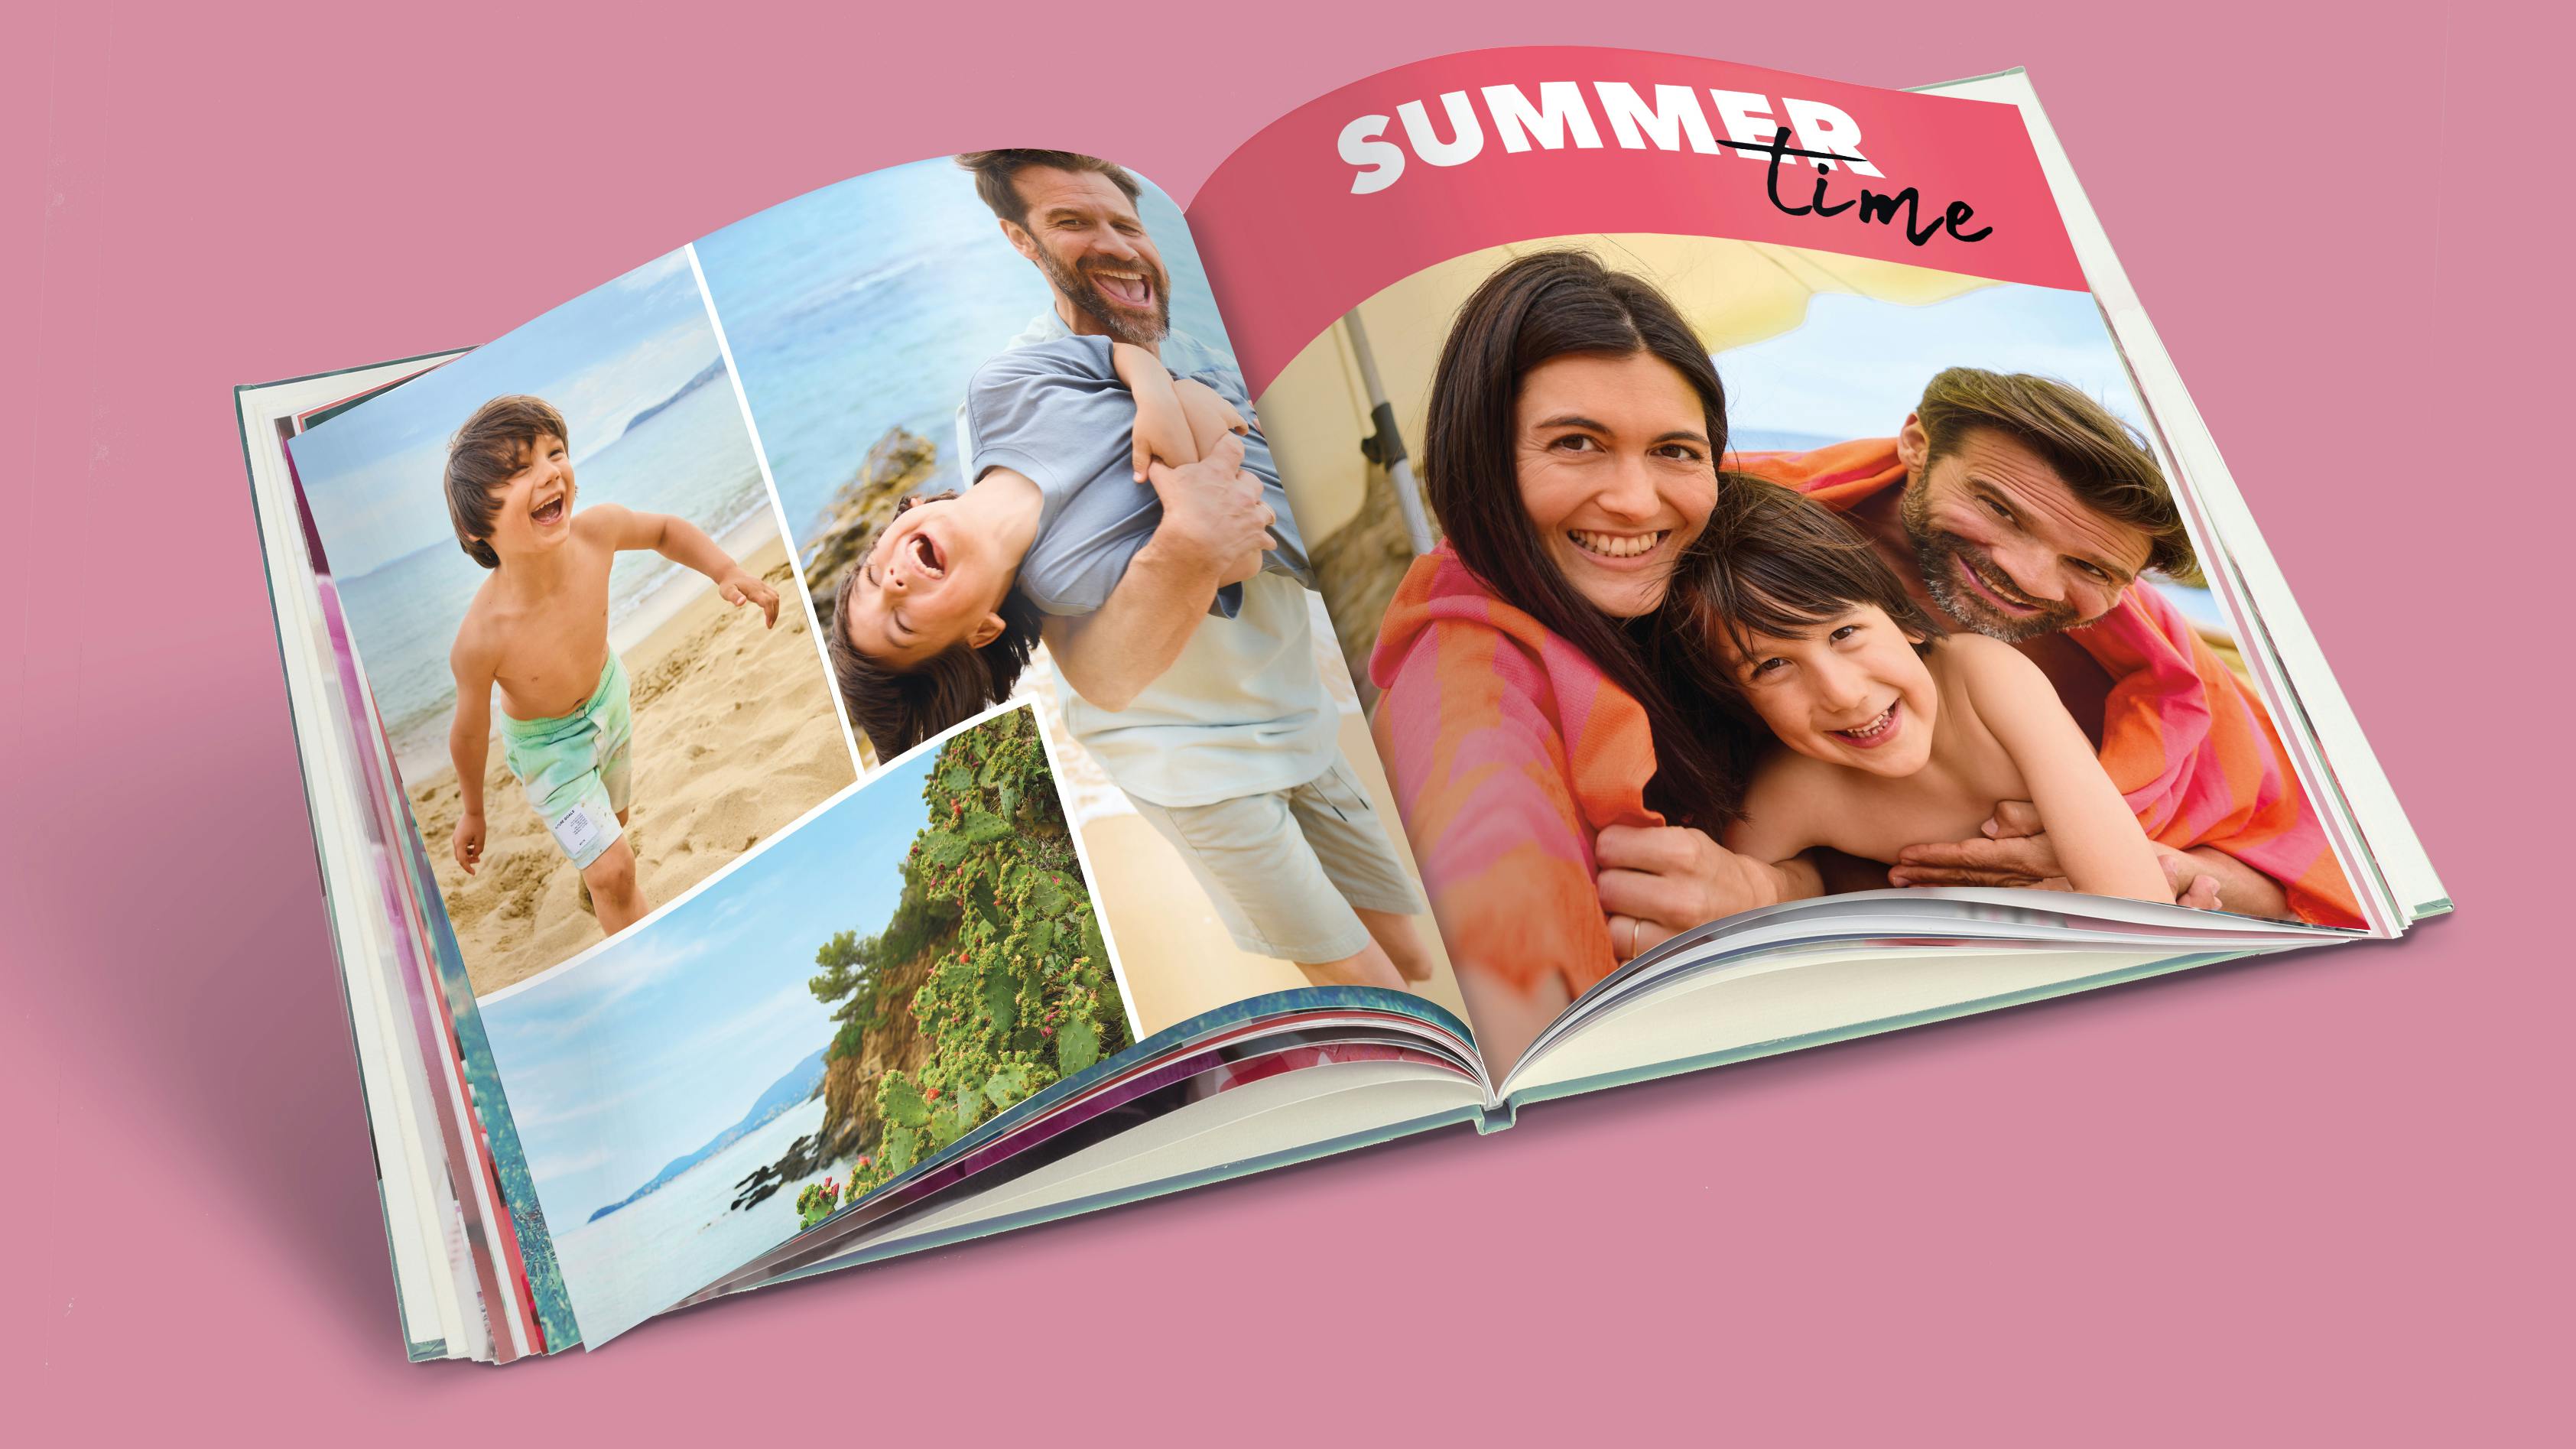 Pixum Fotobuch im quadratischen Format mit sommerlichen Familienfotos vom Urlaub